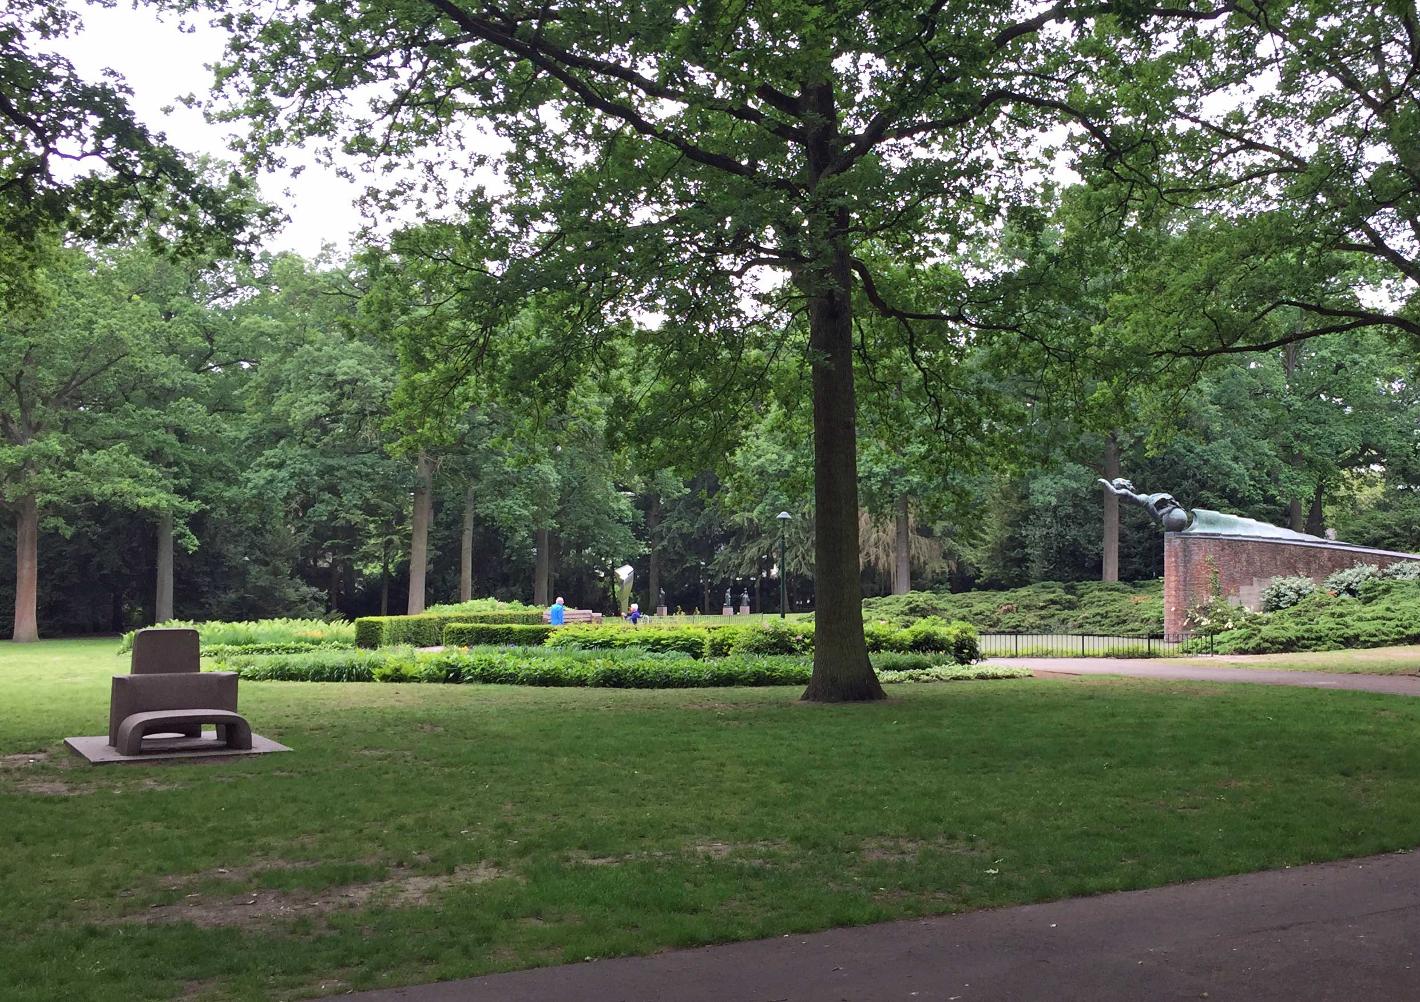 Photo Stadswandelpark en Eindhoven, Voir, Sites touristiques, Quartier, place, parc - #1